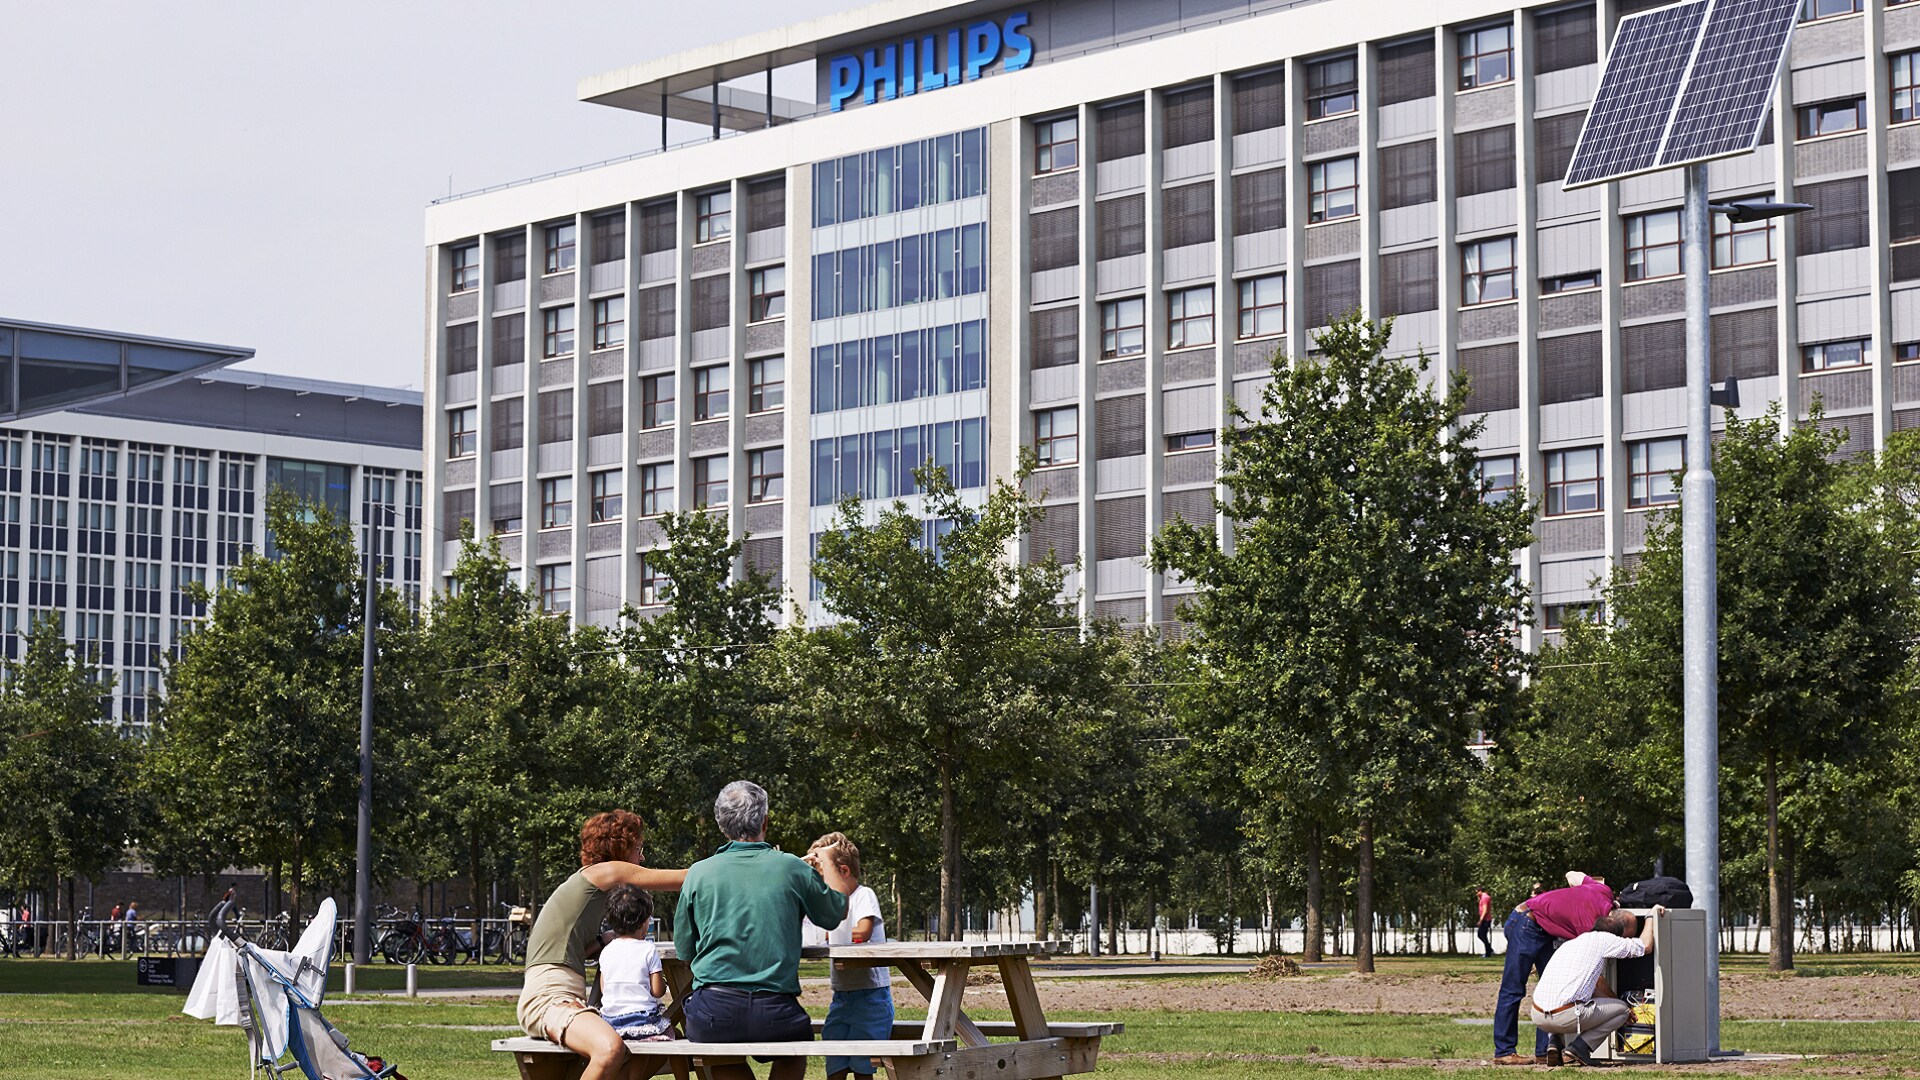 Realizacja celów związanych z ESG to nadal priorytet Philips